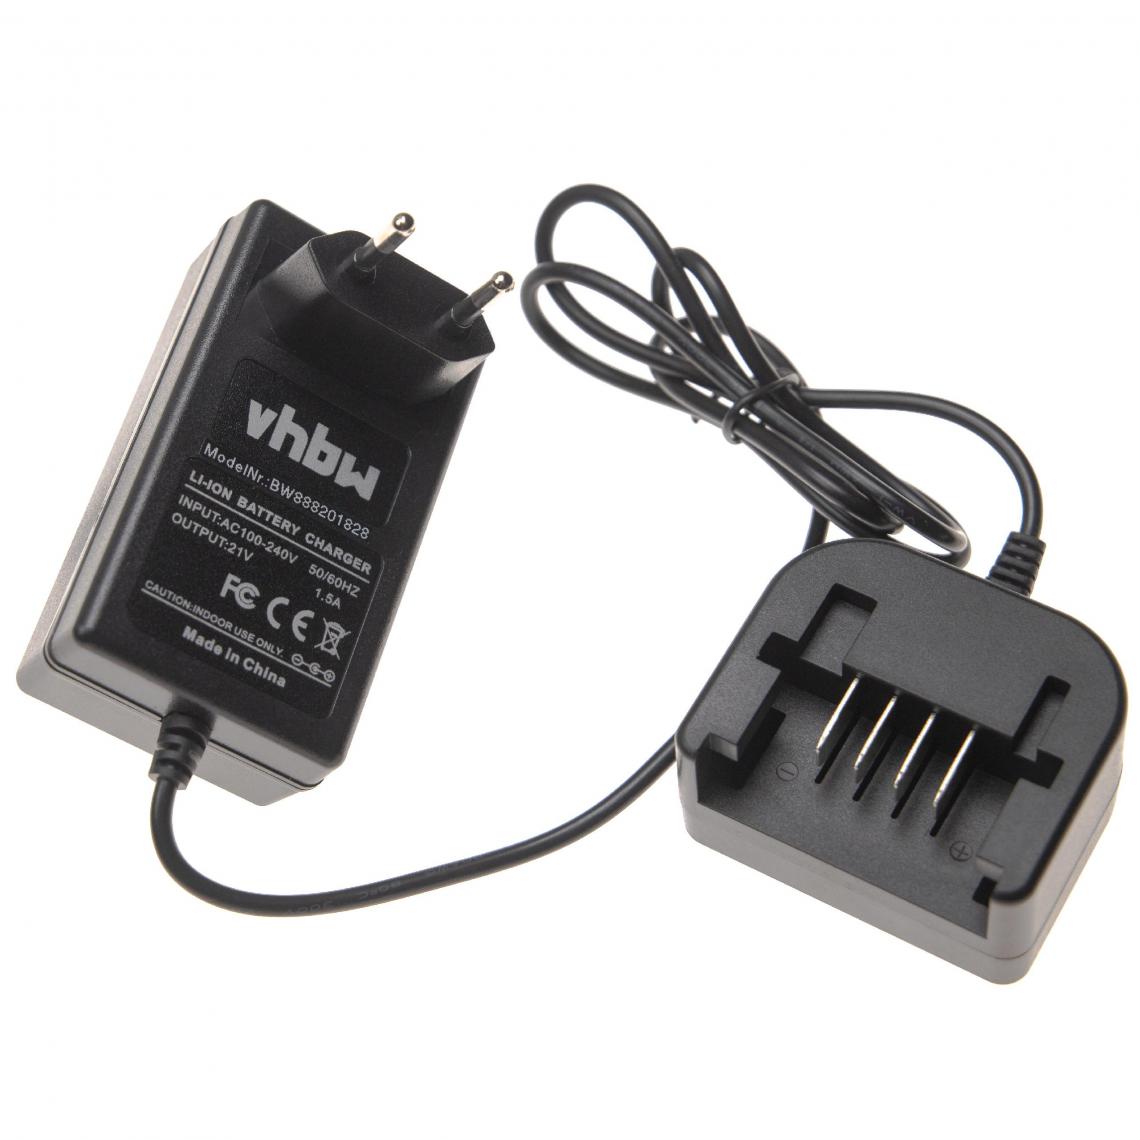 Vhbw - vhbw Chargeur compatible avec Worx WX290.9, WX292, WX292.9, WX371, WX371.2, WX372, WX372.1, WX372.2, WX372.9 batteries Li-ion d'outils (20V) - Clouterie